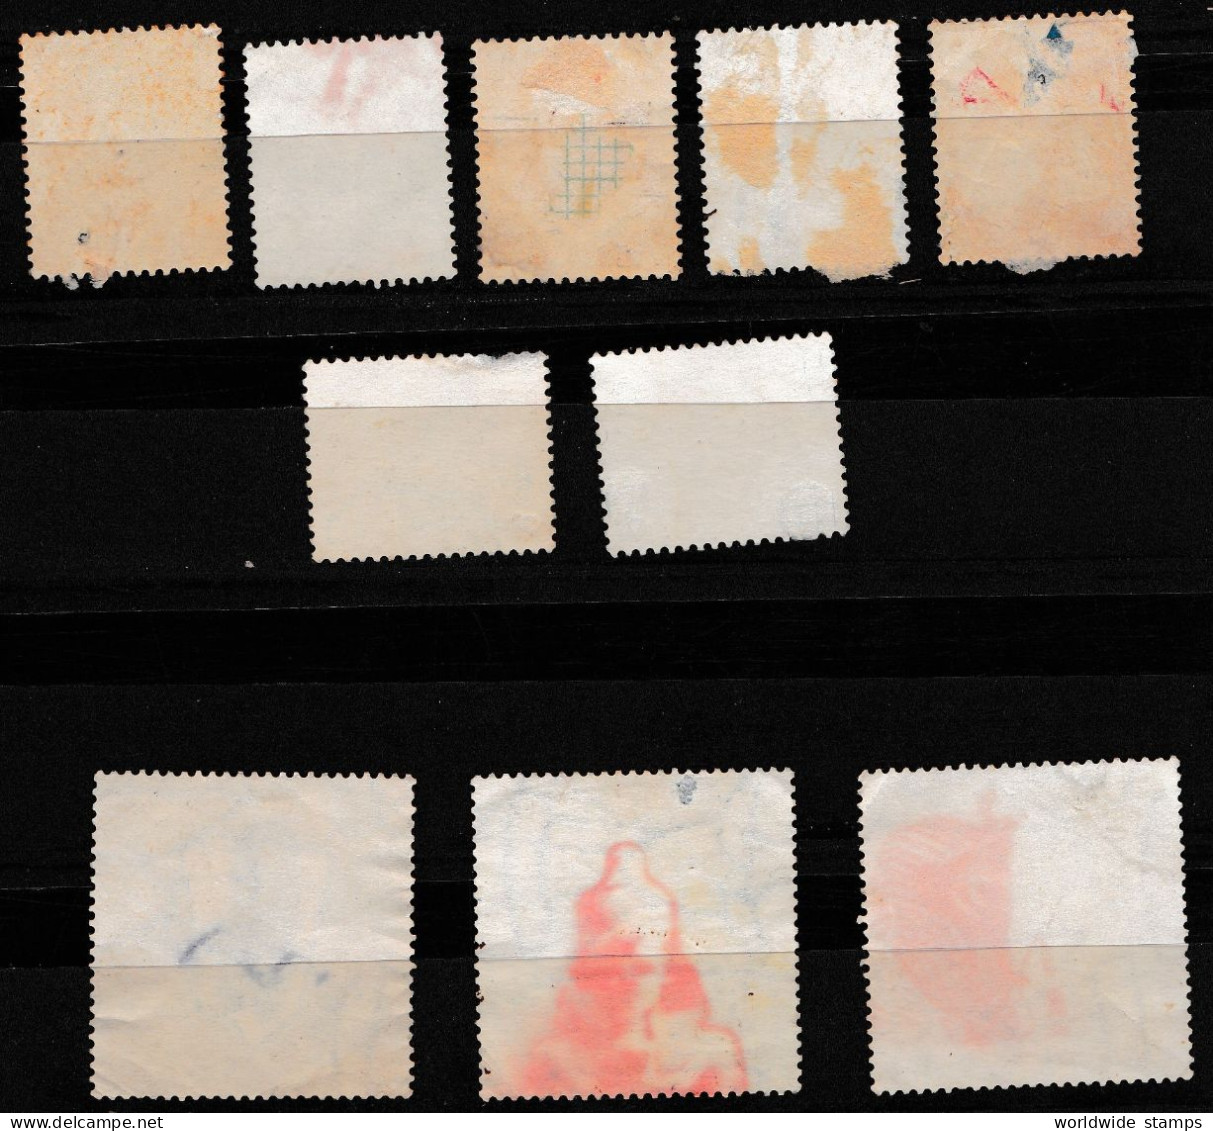 Egypt UAR EGYPT OLD STAMPS 1964 National Symbols USED 12v. - Used Stamps